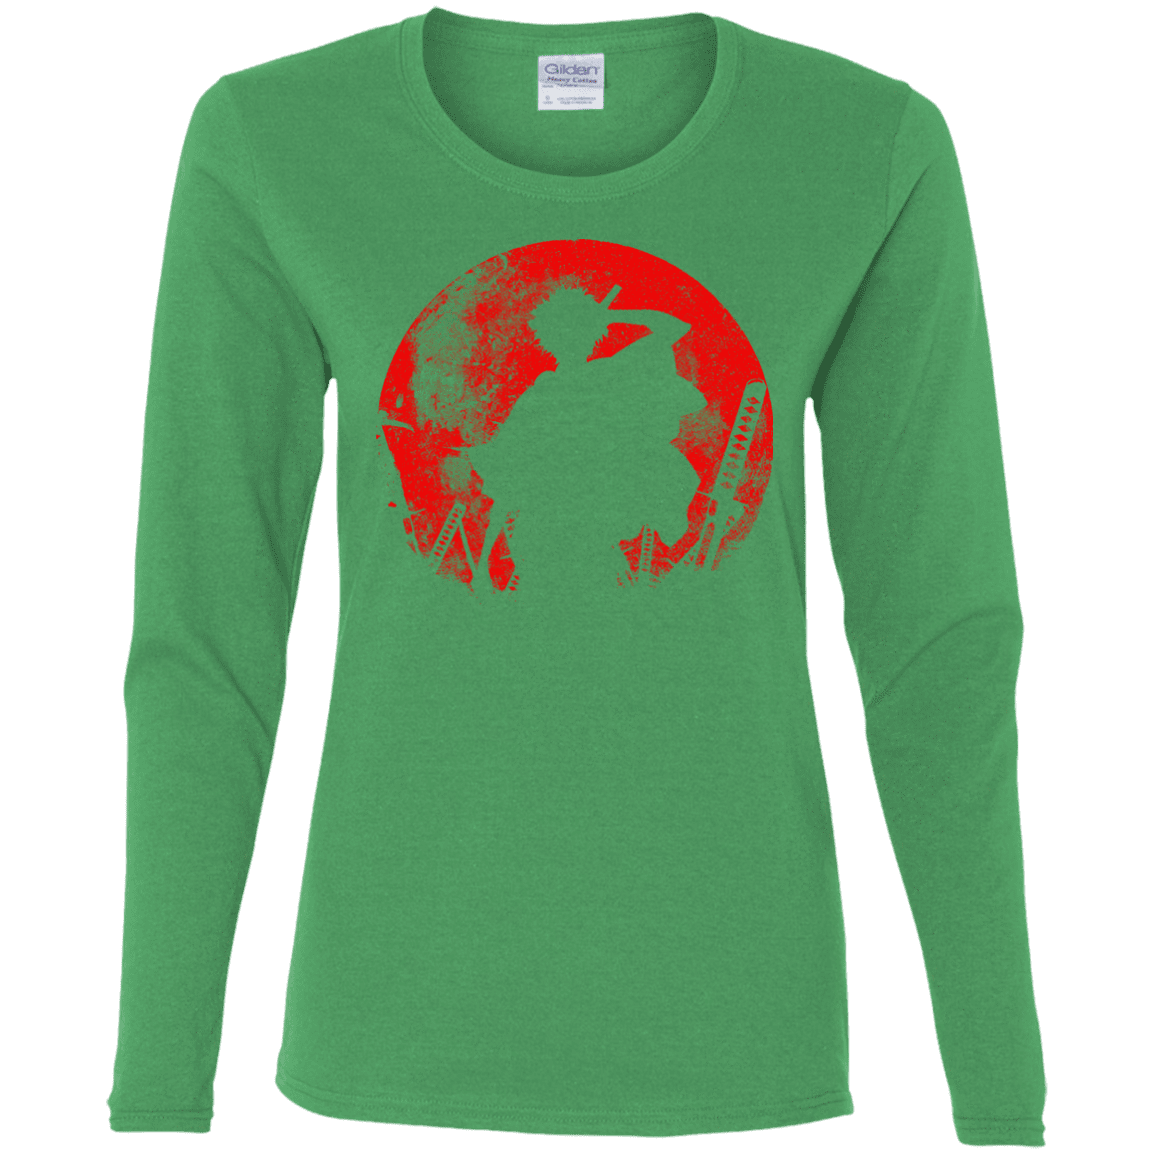 T-Shirts Irish Green / S Samurai Swords Women's Long Sleeve T-Shirt